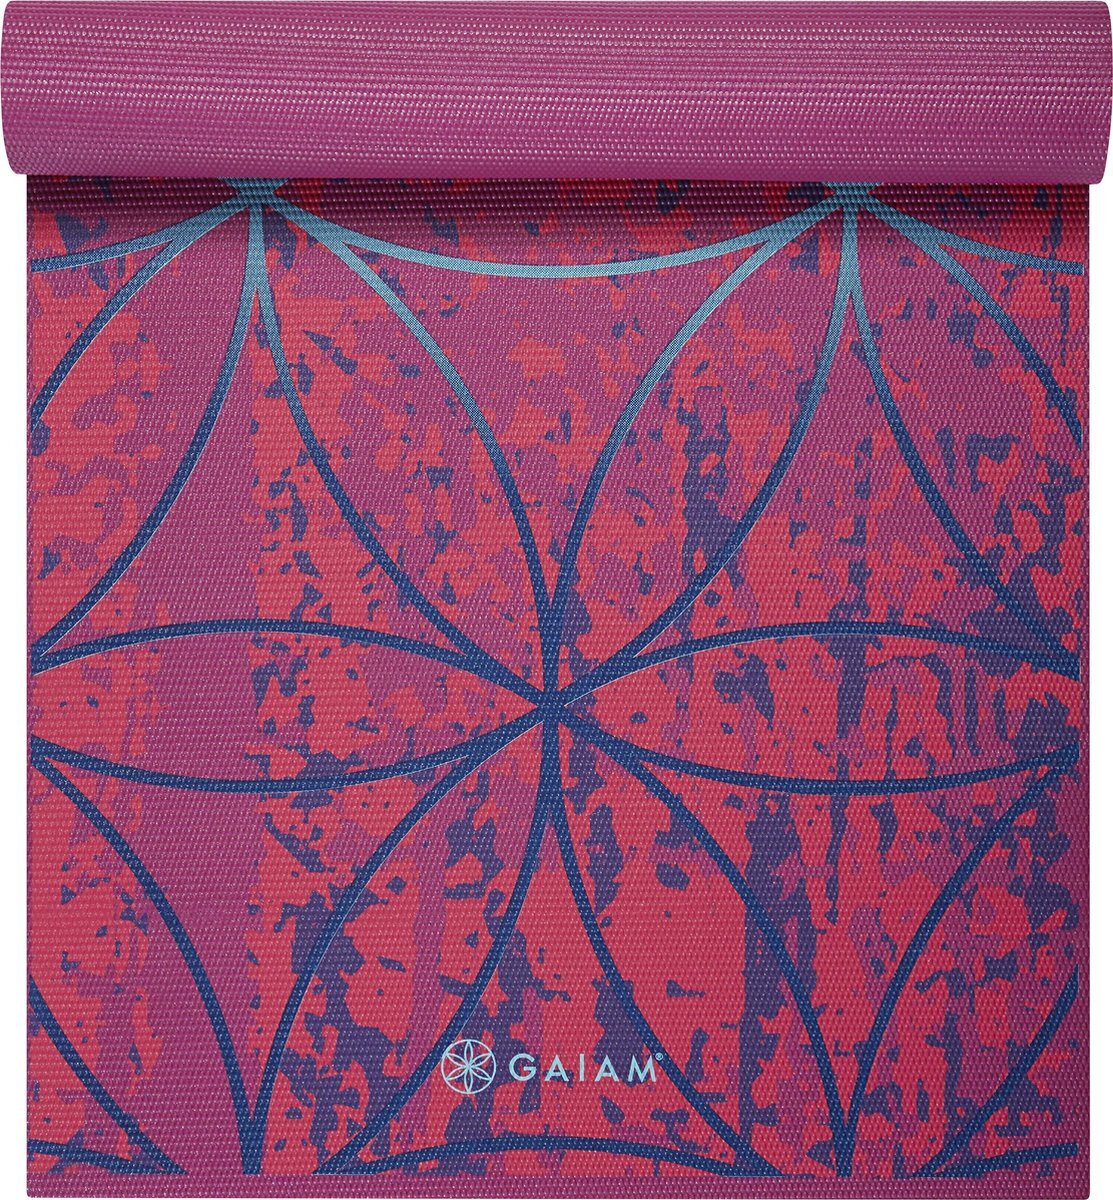 Gaiam Radiance Yoga Mat